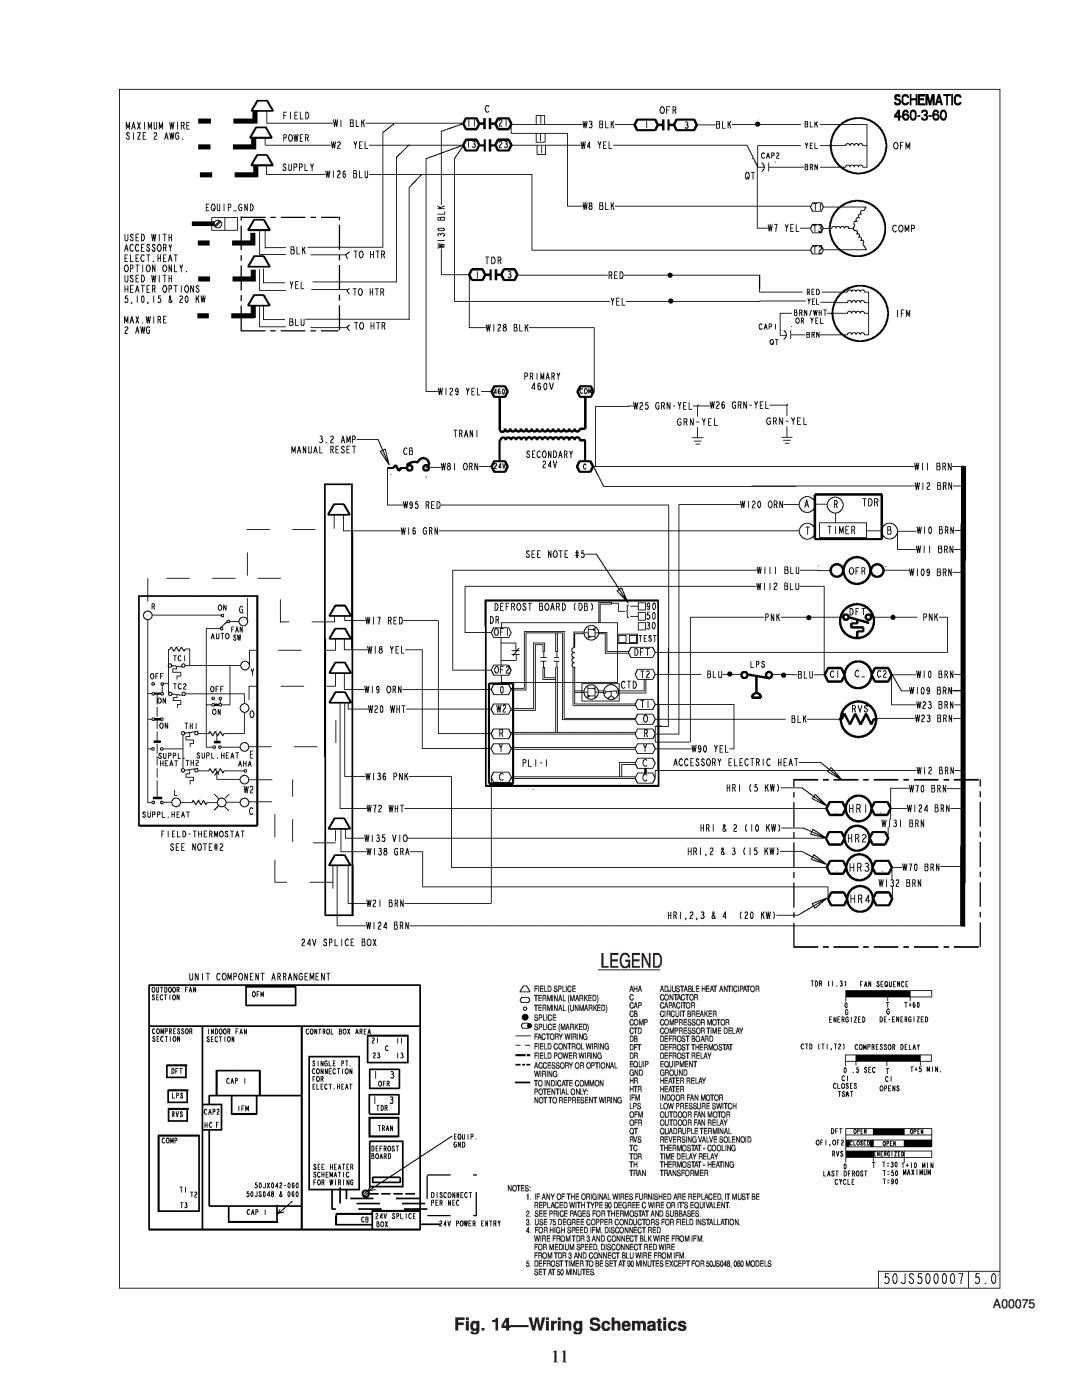 Carrier 50JS instruction manual ÐWiring Schematics, A00075 